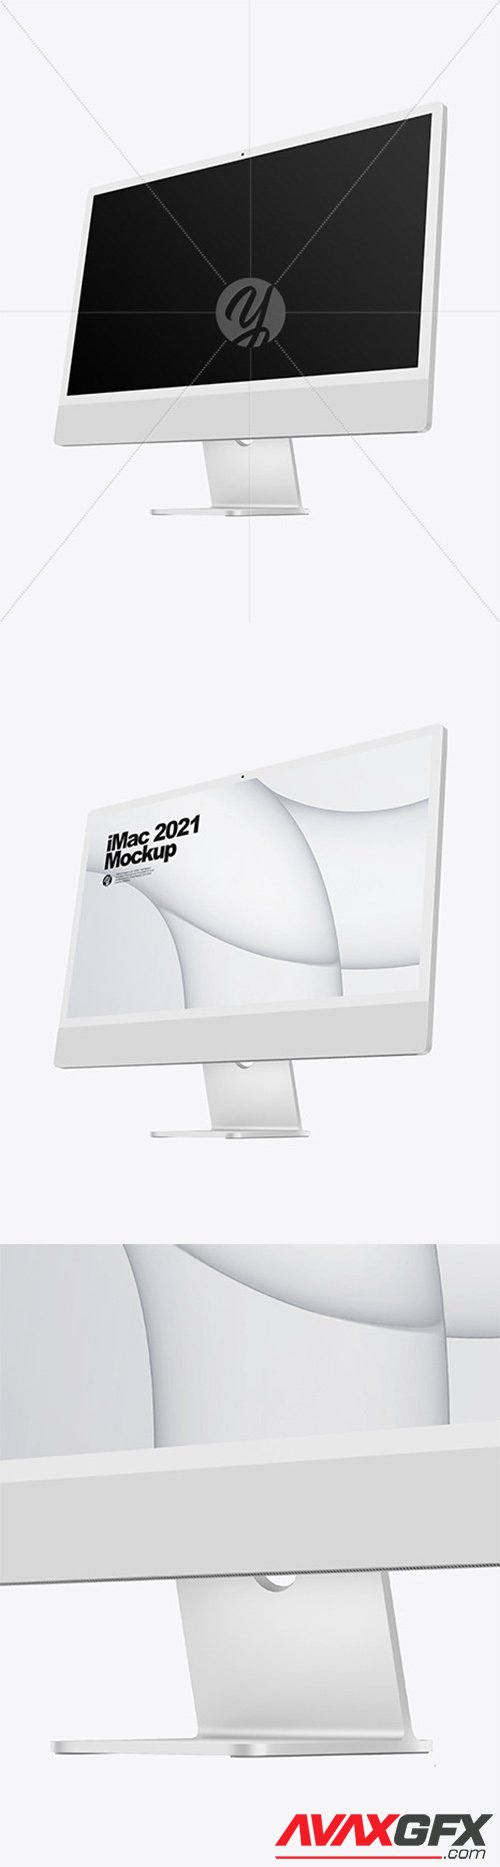 Silver iMac 24 Mockup 82255